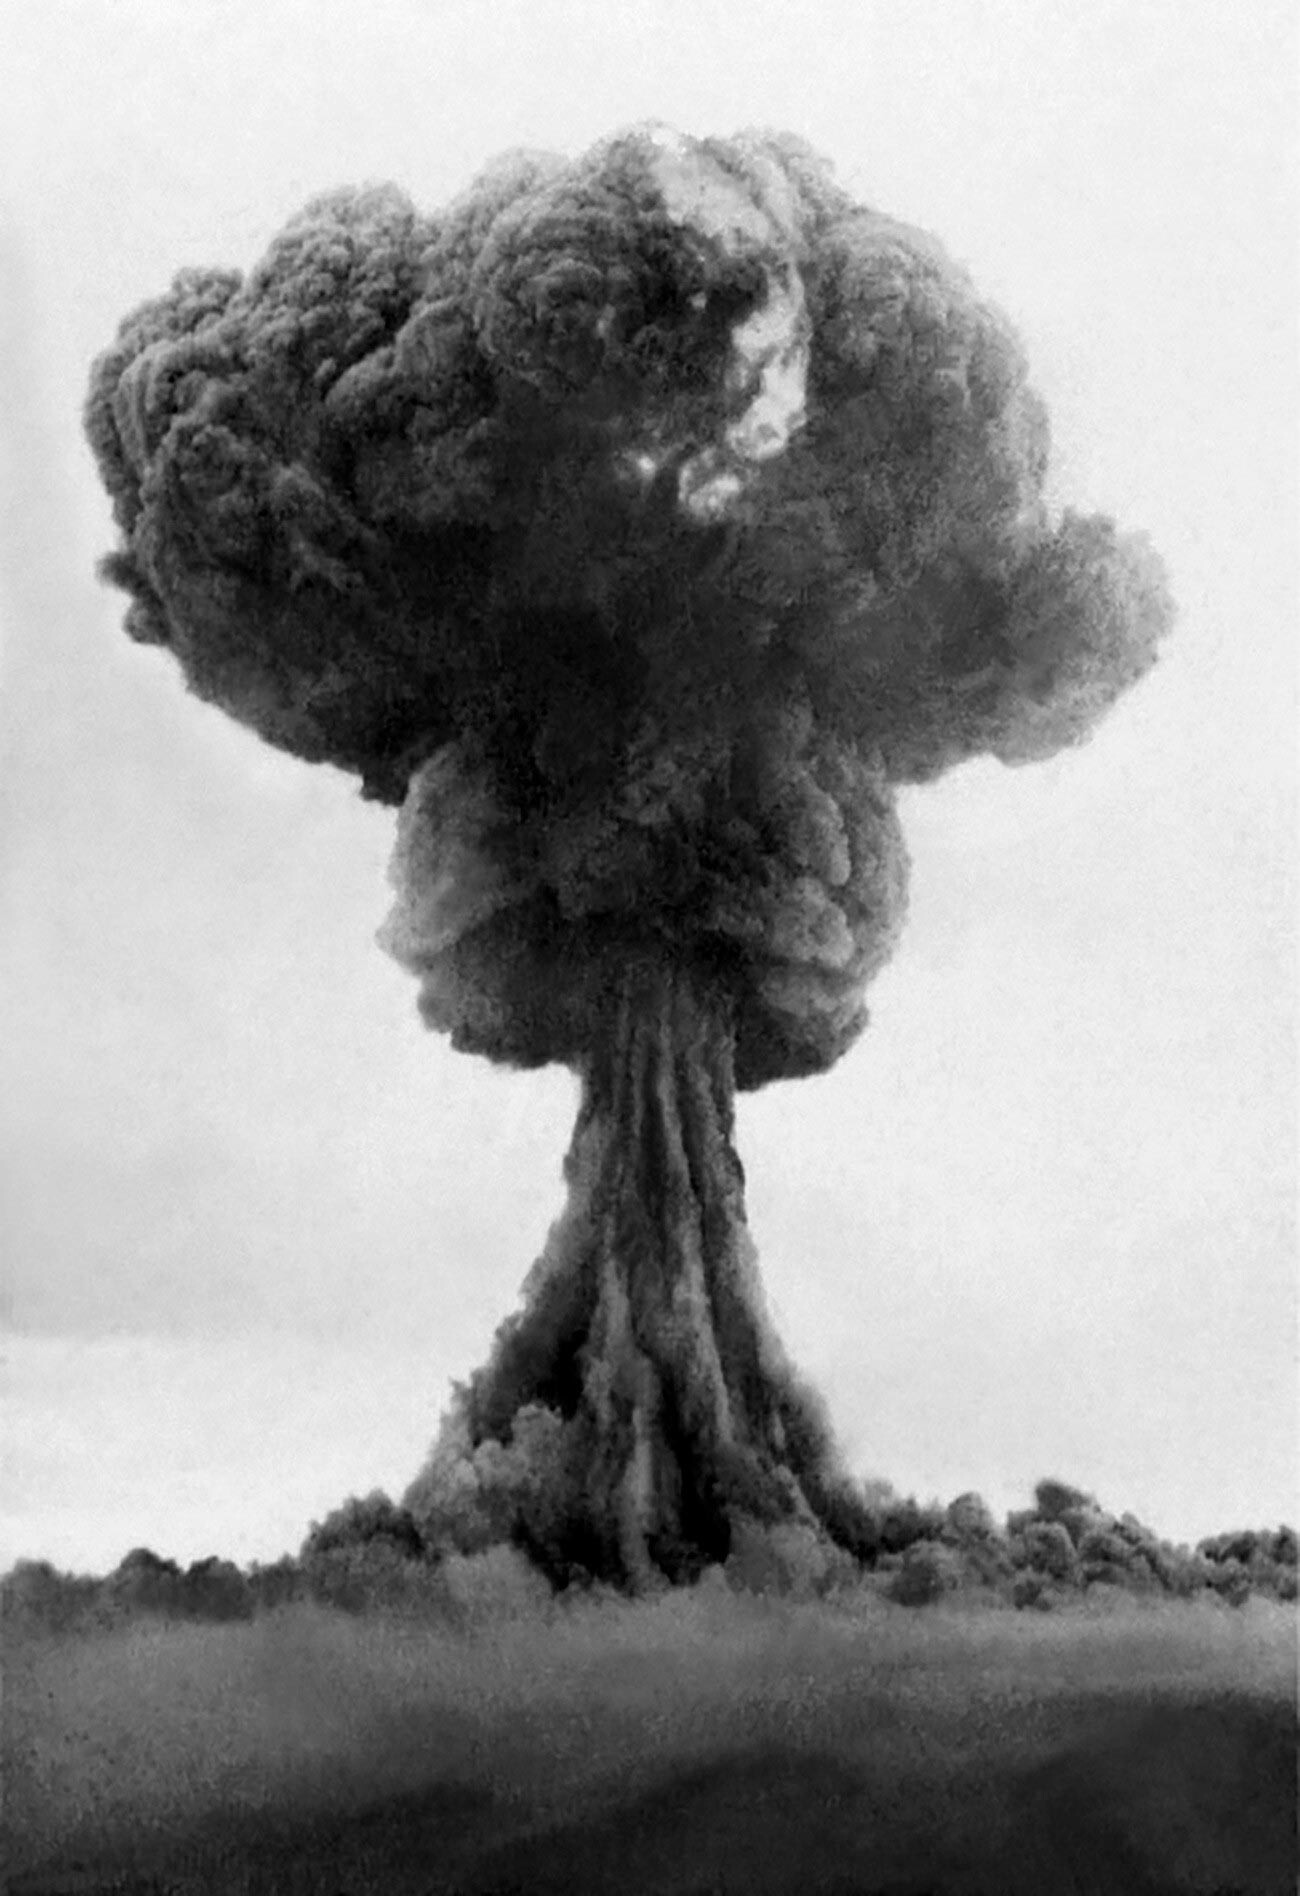 Der Atompilz nach der Explosion von RDS-1, der ersten sowjetischen Atombombe im Jahr 1949.